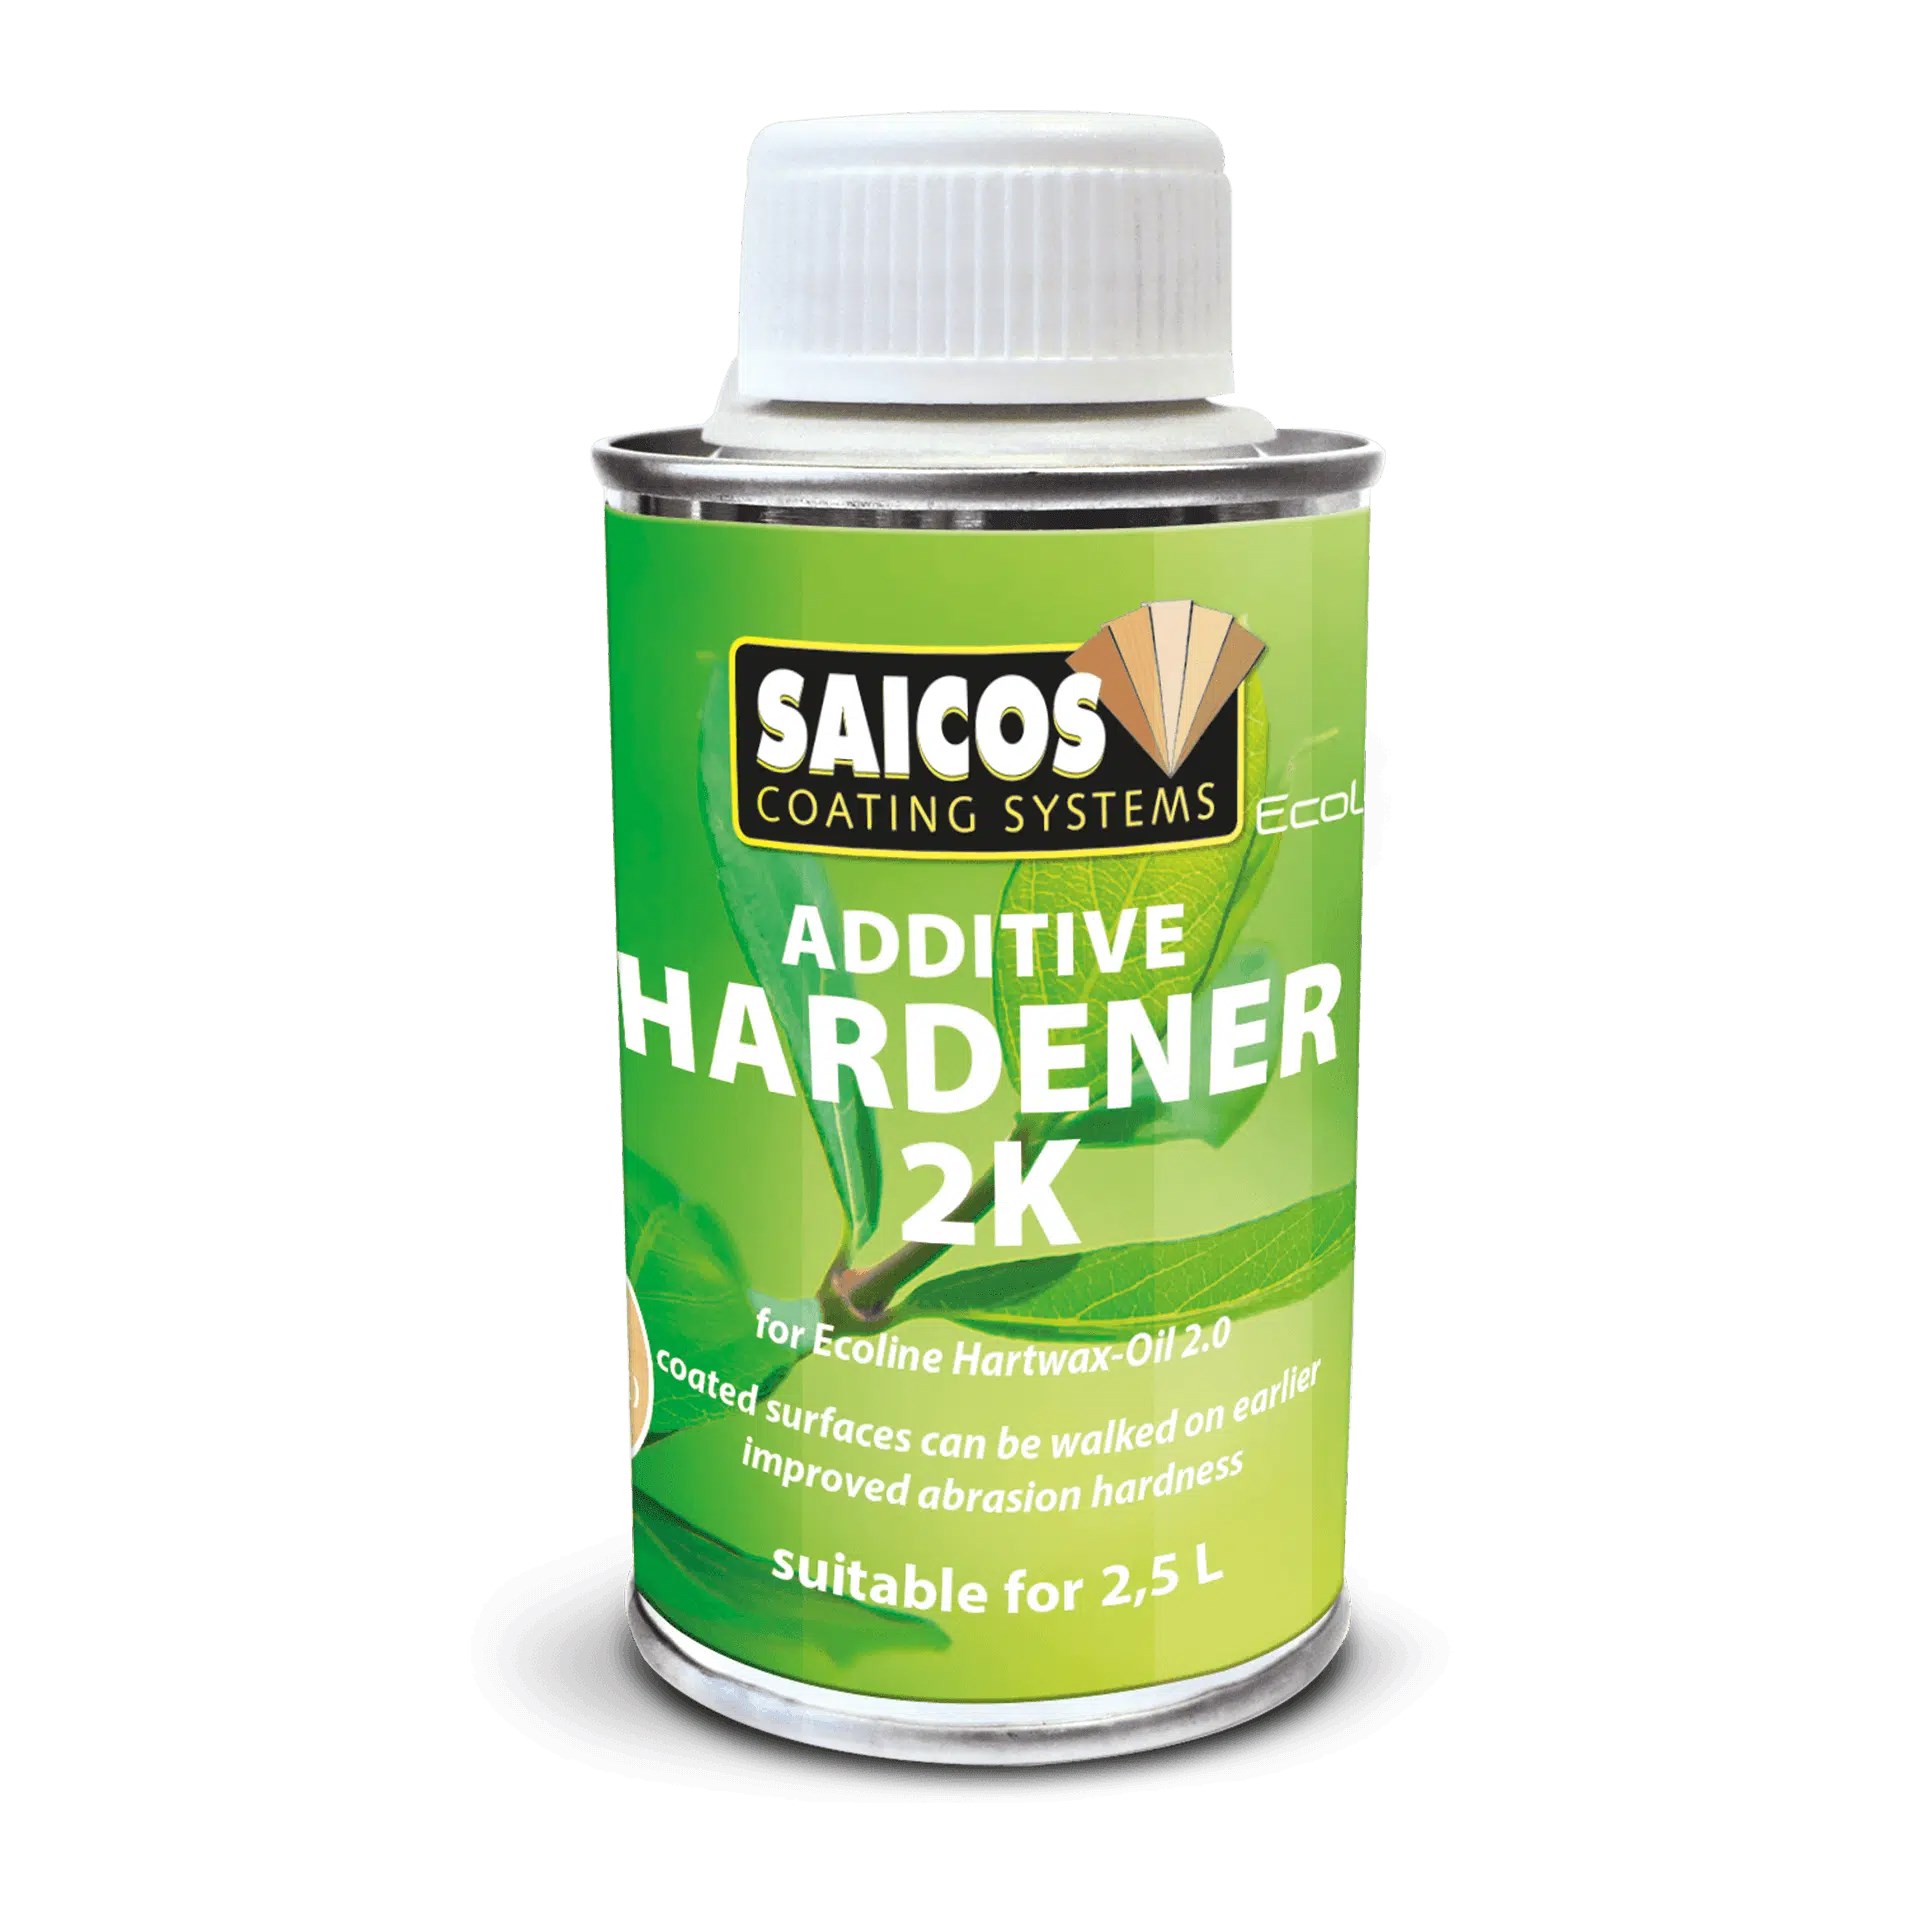 Afbeelding van Saicos Ecoline Additieve Hardener 2K (3643) tbv 0.75L verpakking